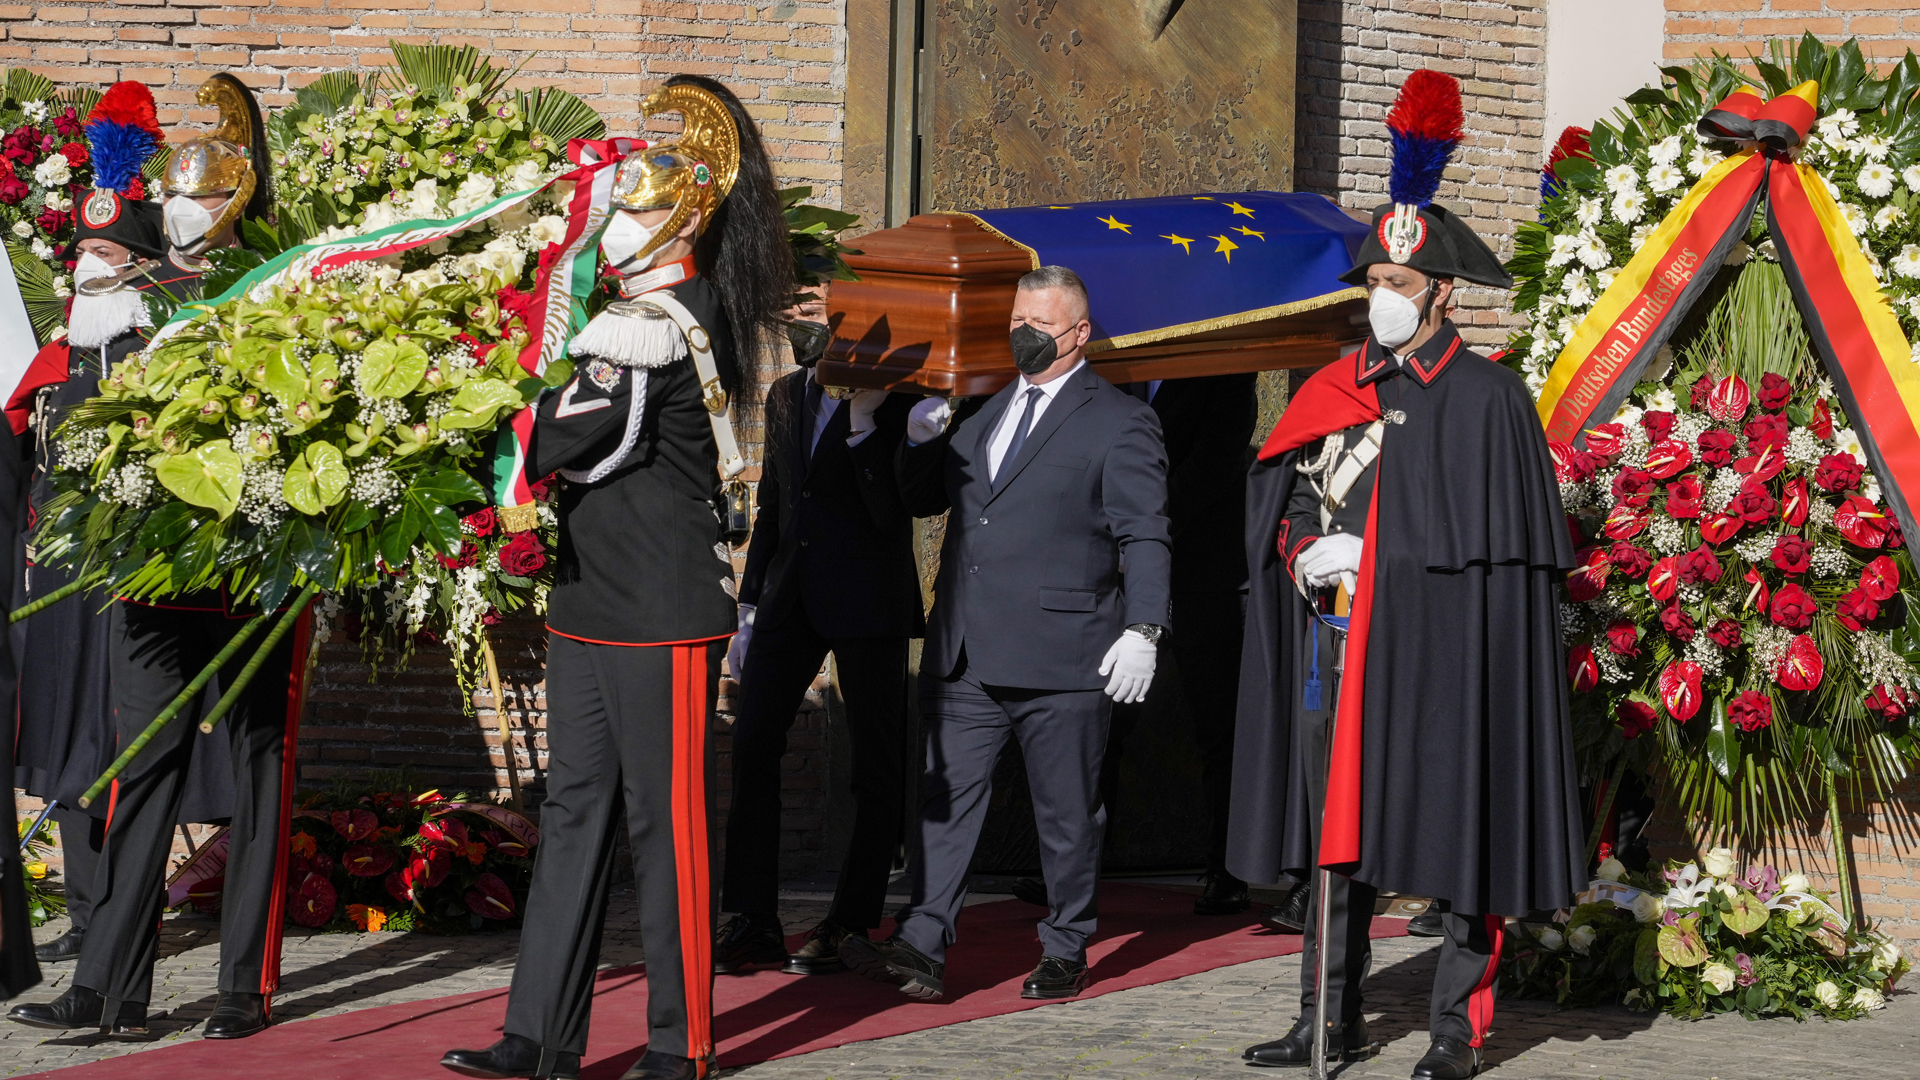 Der Sarg des verstorbenen EU-Parlamentspräsidenten David Sassoli wird nach Ende des Staatsbegräbnisses aus der Basilika in Rom getragen.  | dpa